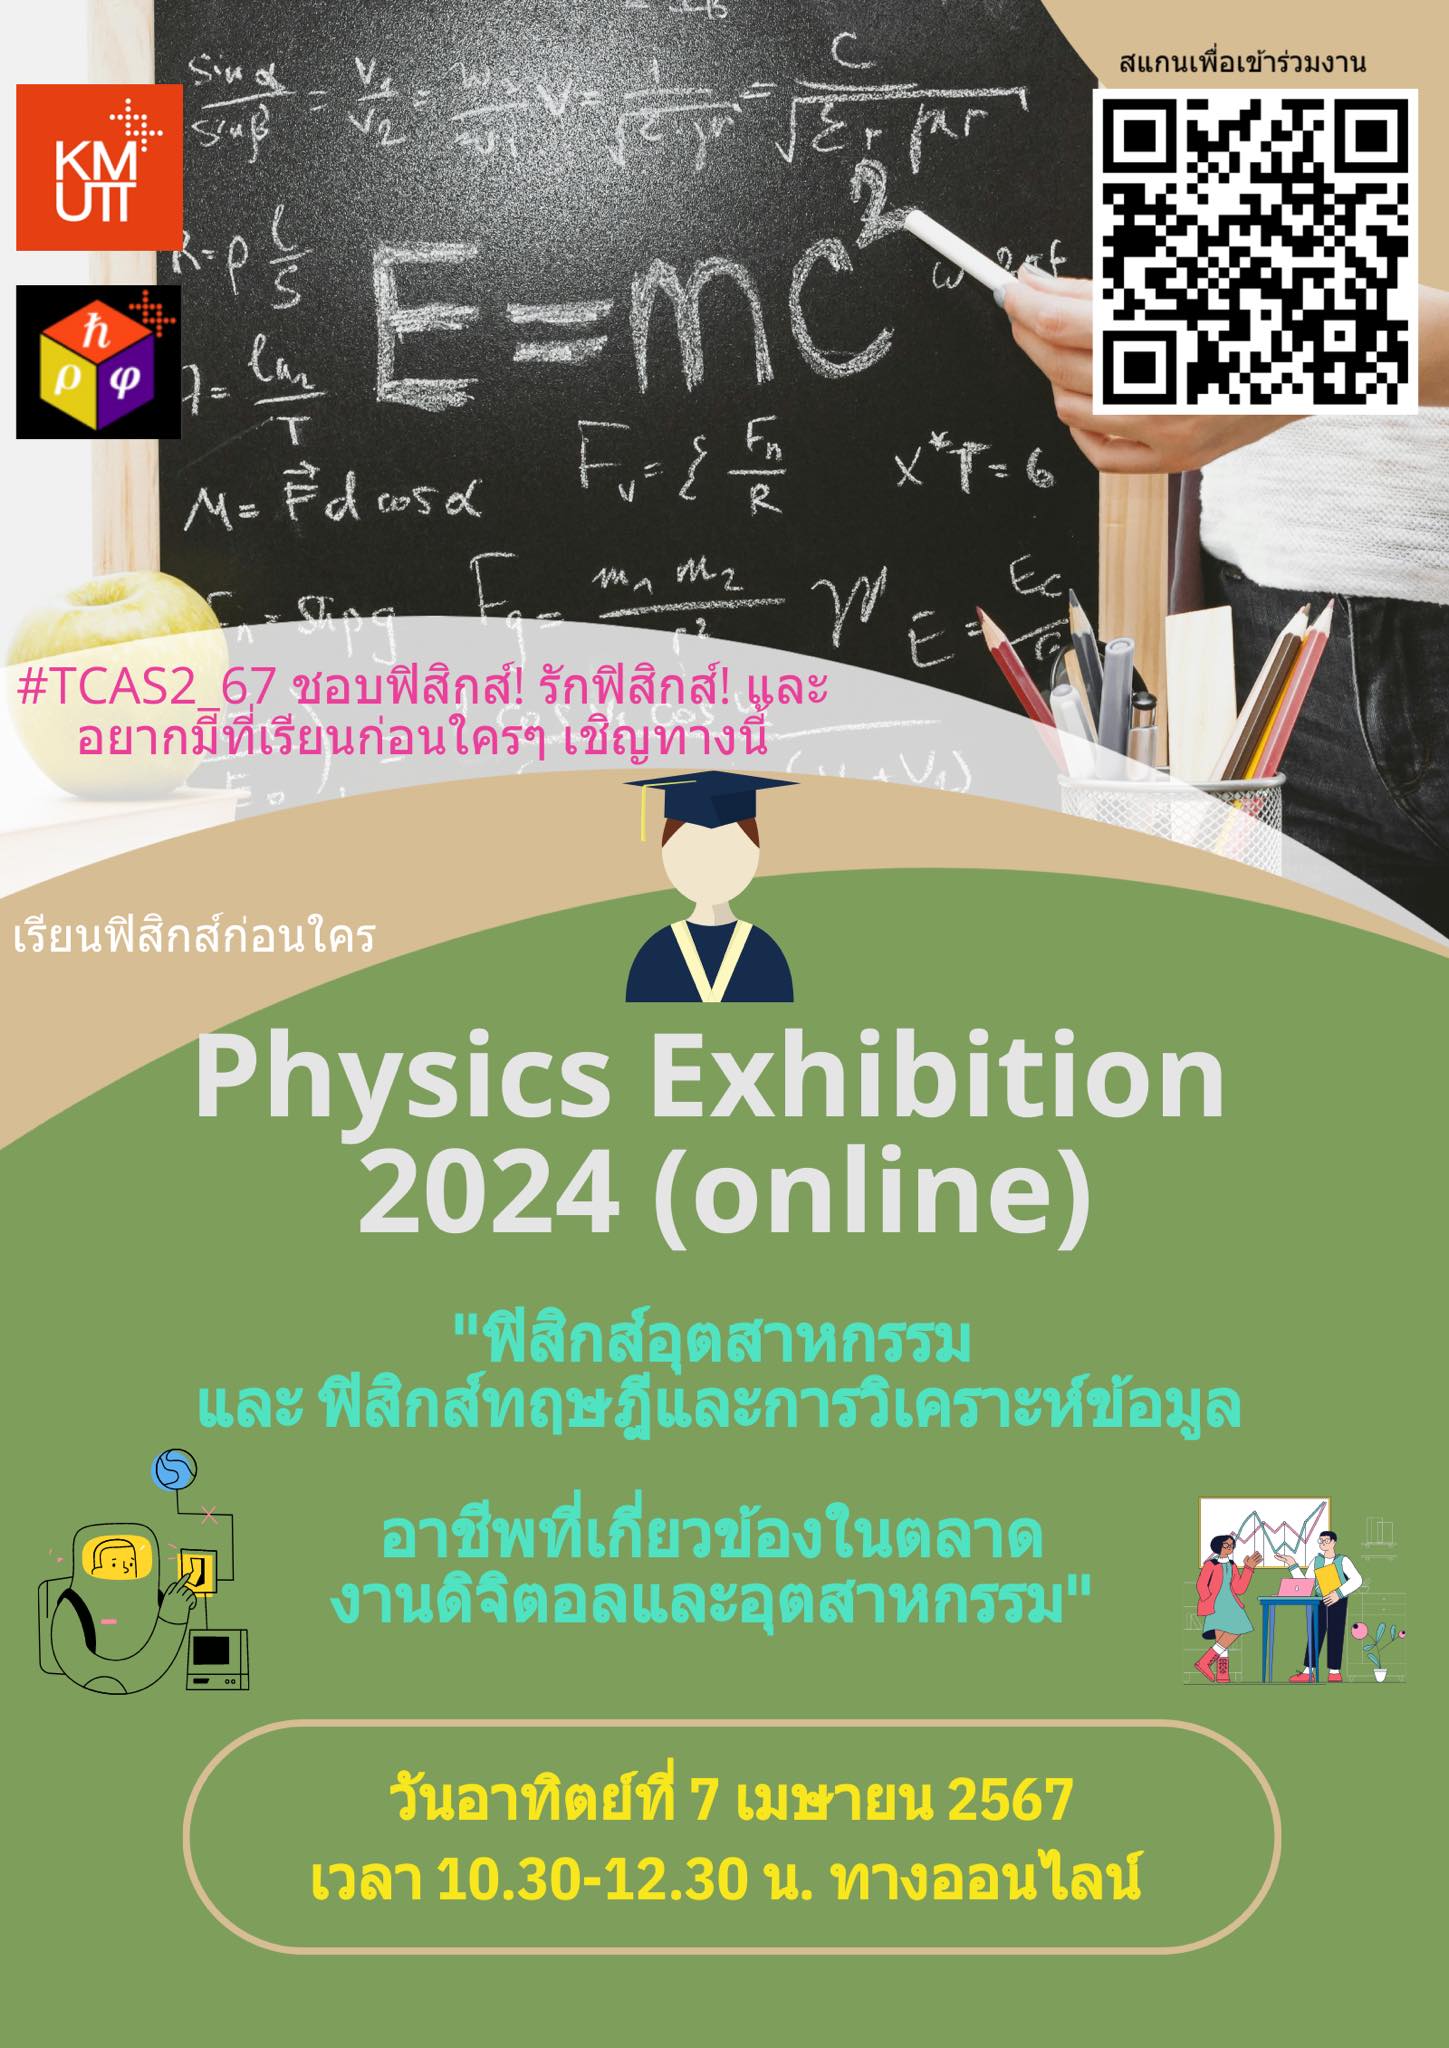 โครงการ Physics Exhibition 2024 (ออนไลน์) ในวันอาทิตย์ ที่ 7 เมษายน 2567 เวลา 10.30-12.30 น.